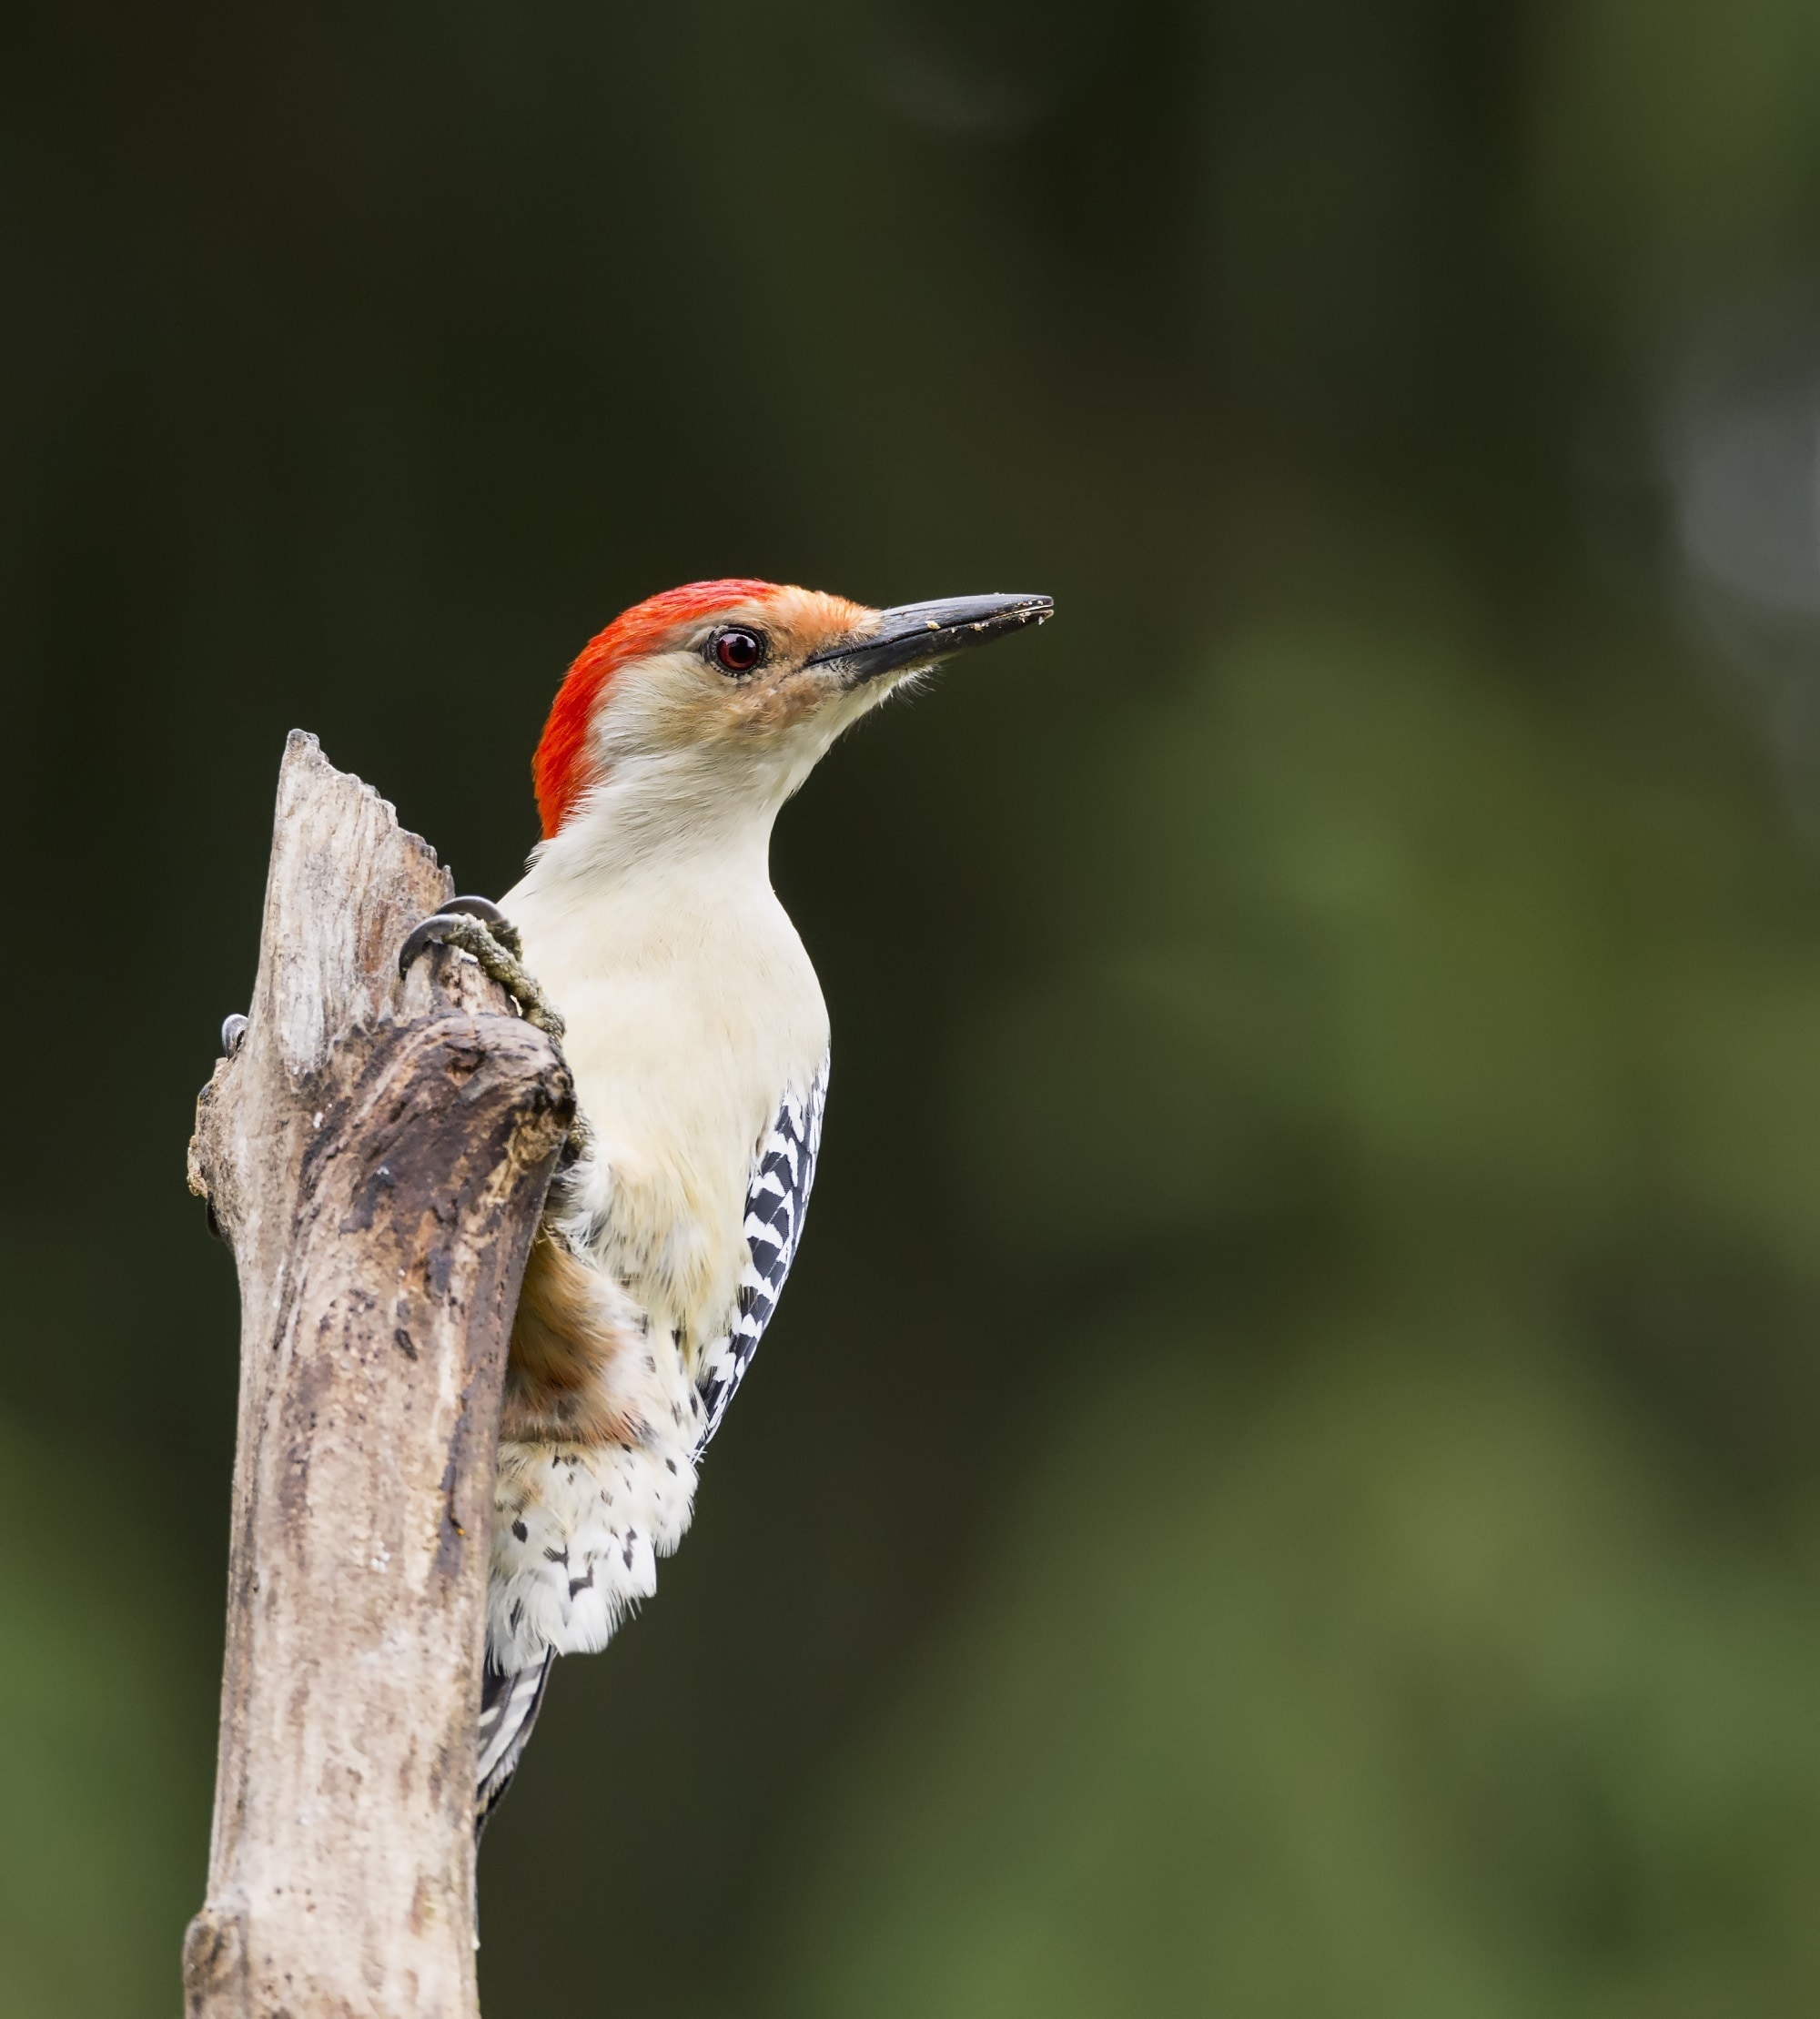 downy woodpecker on grey stick